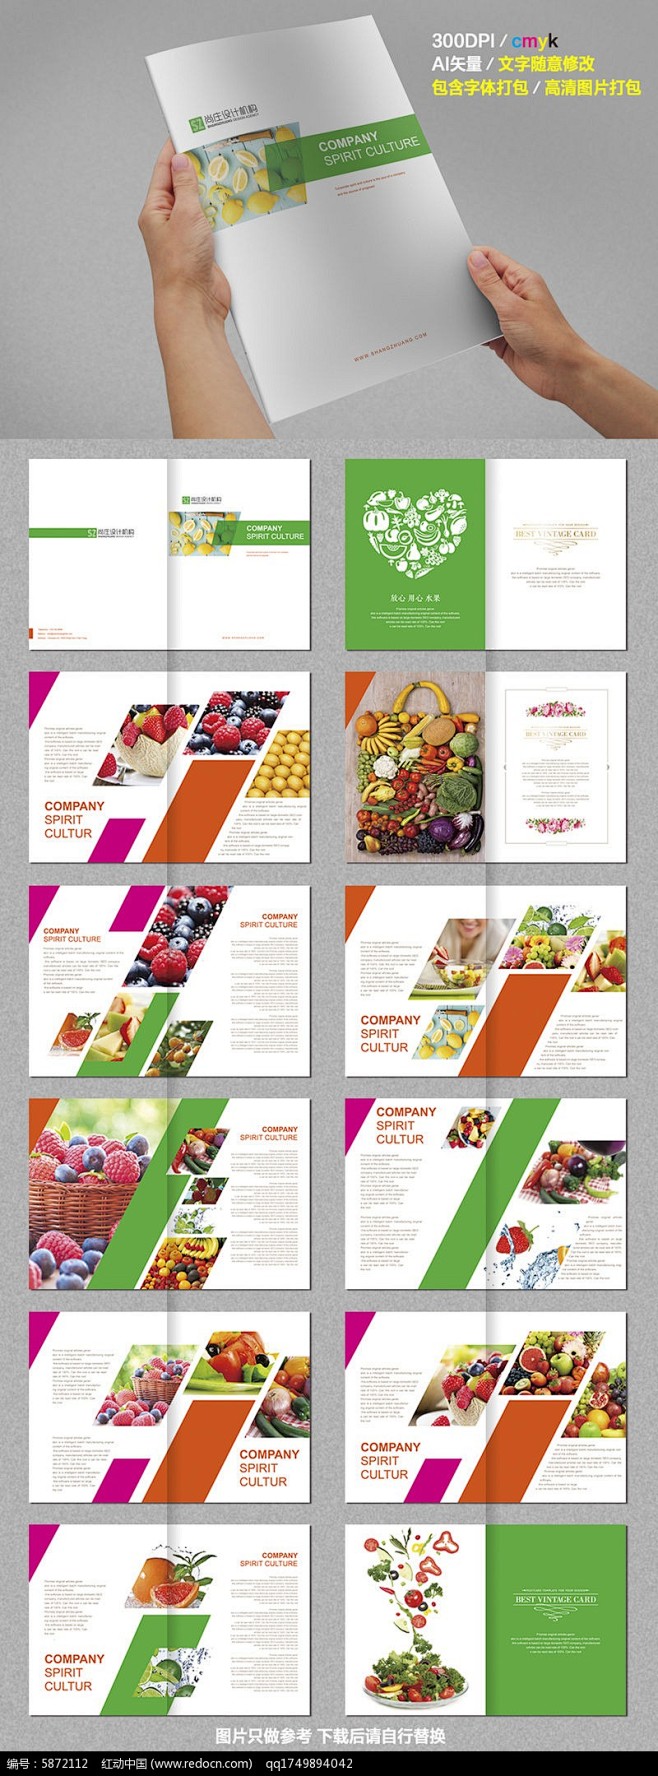 红绿色互补水果画册设计AI素材下载_产品...